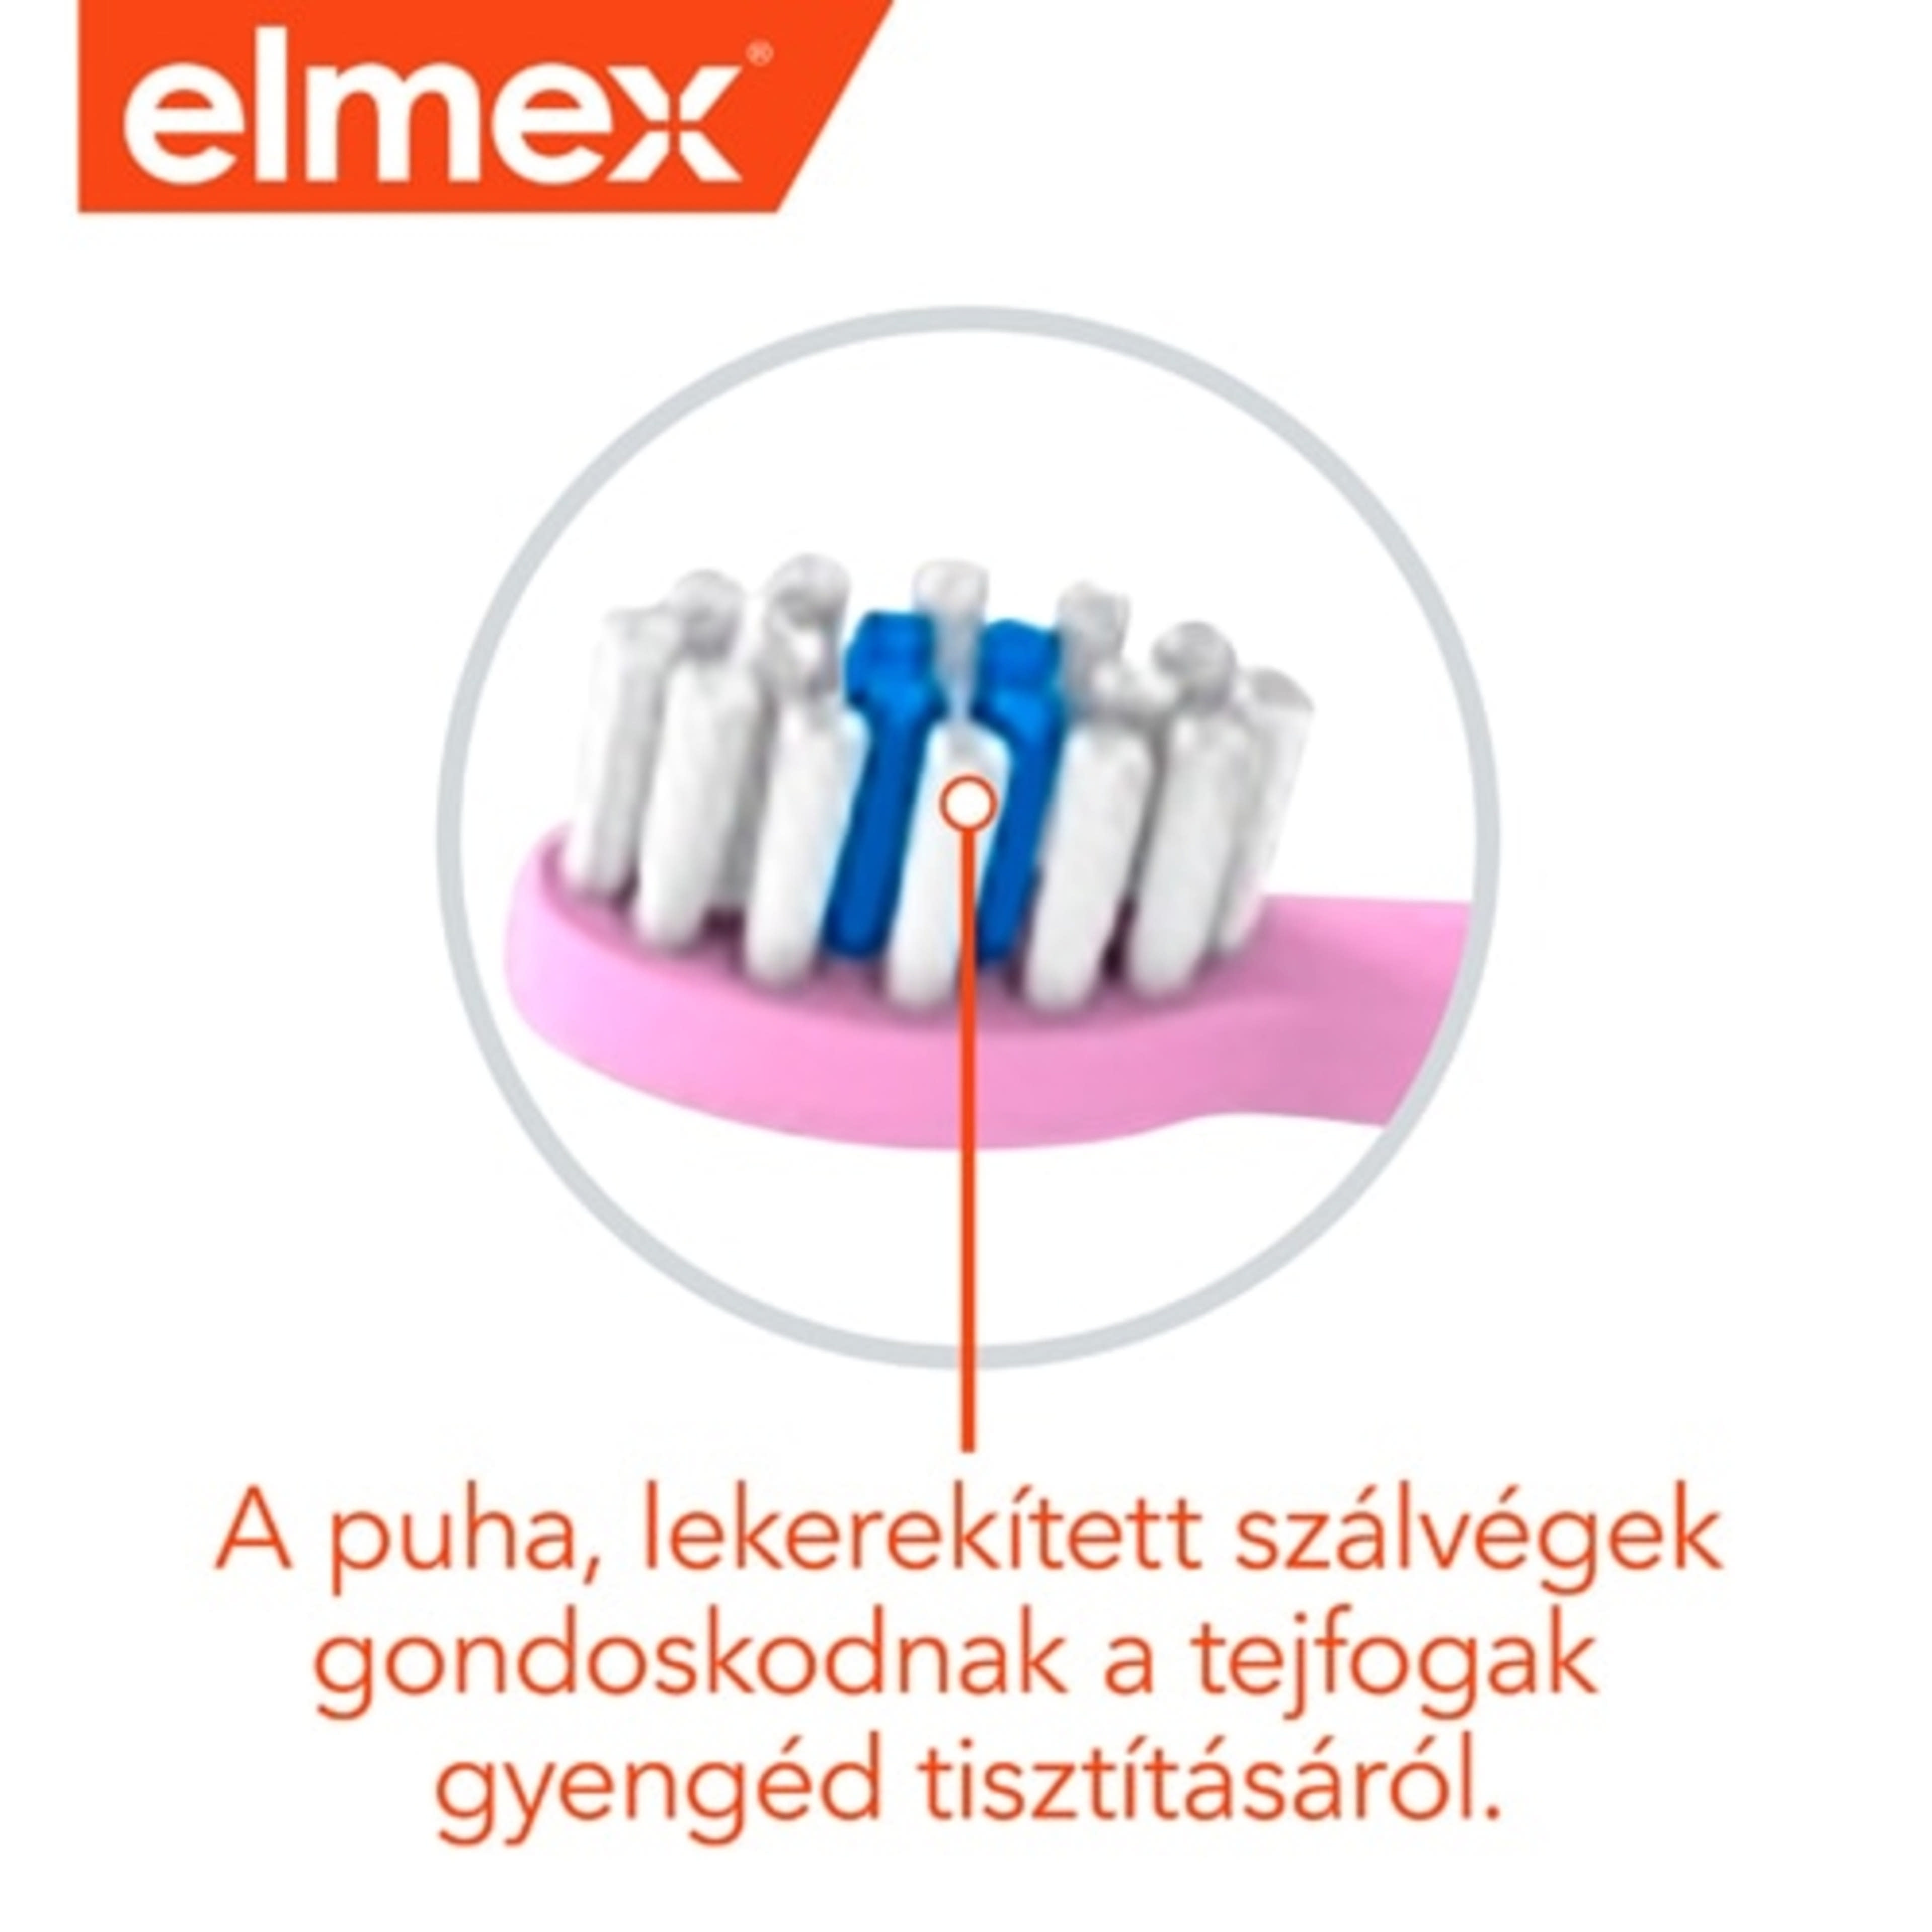 Elmex fogkefe és fogkrém 0-3 éves kor között - 1 db-8